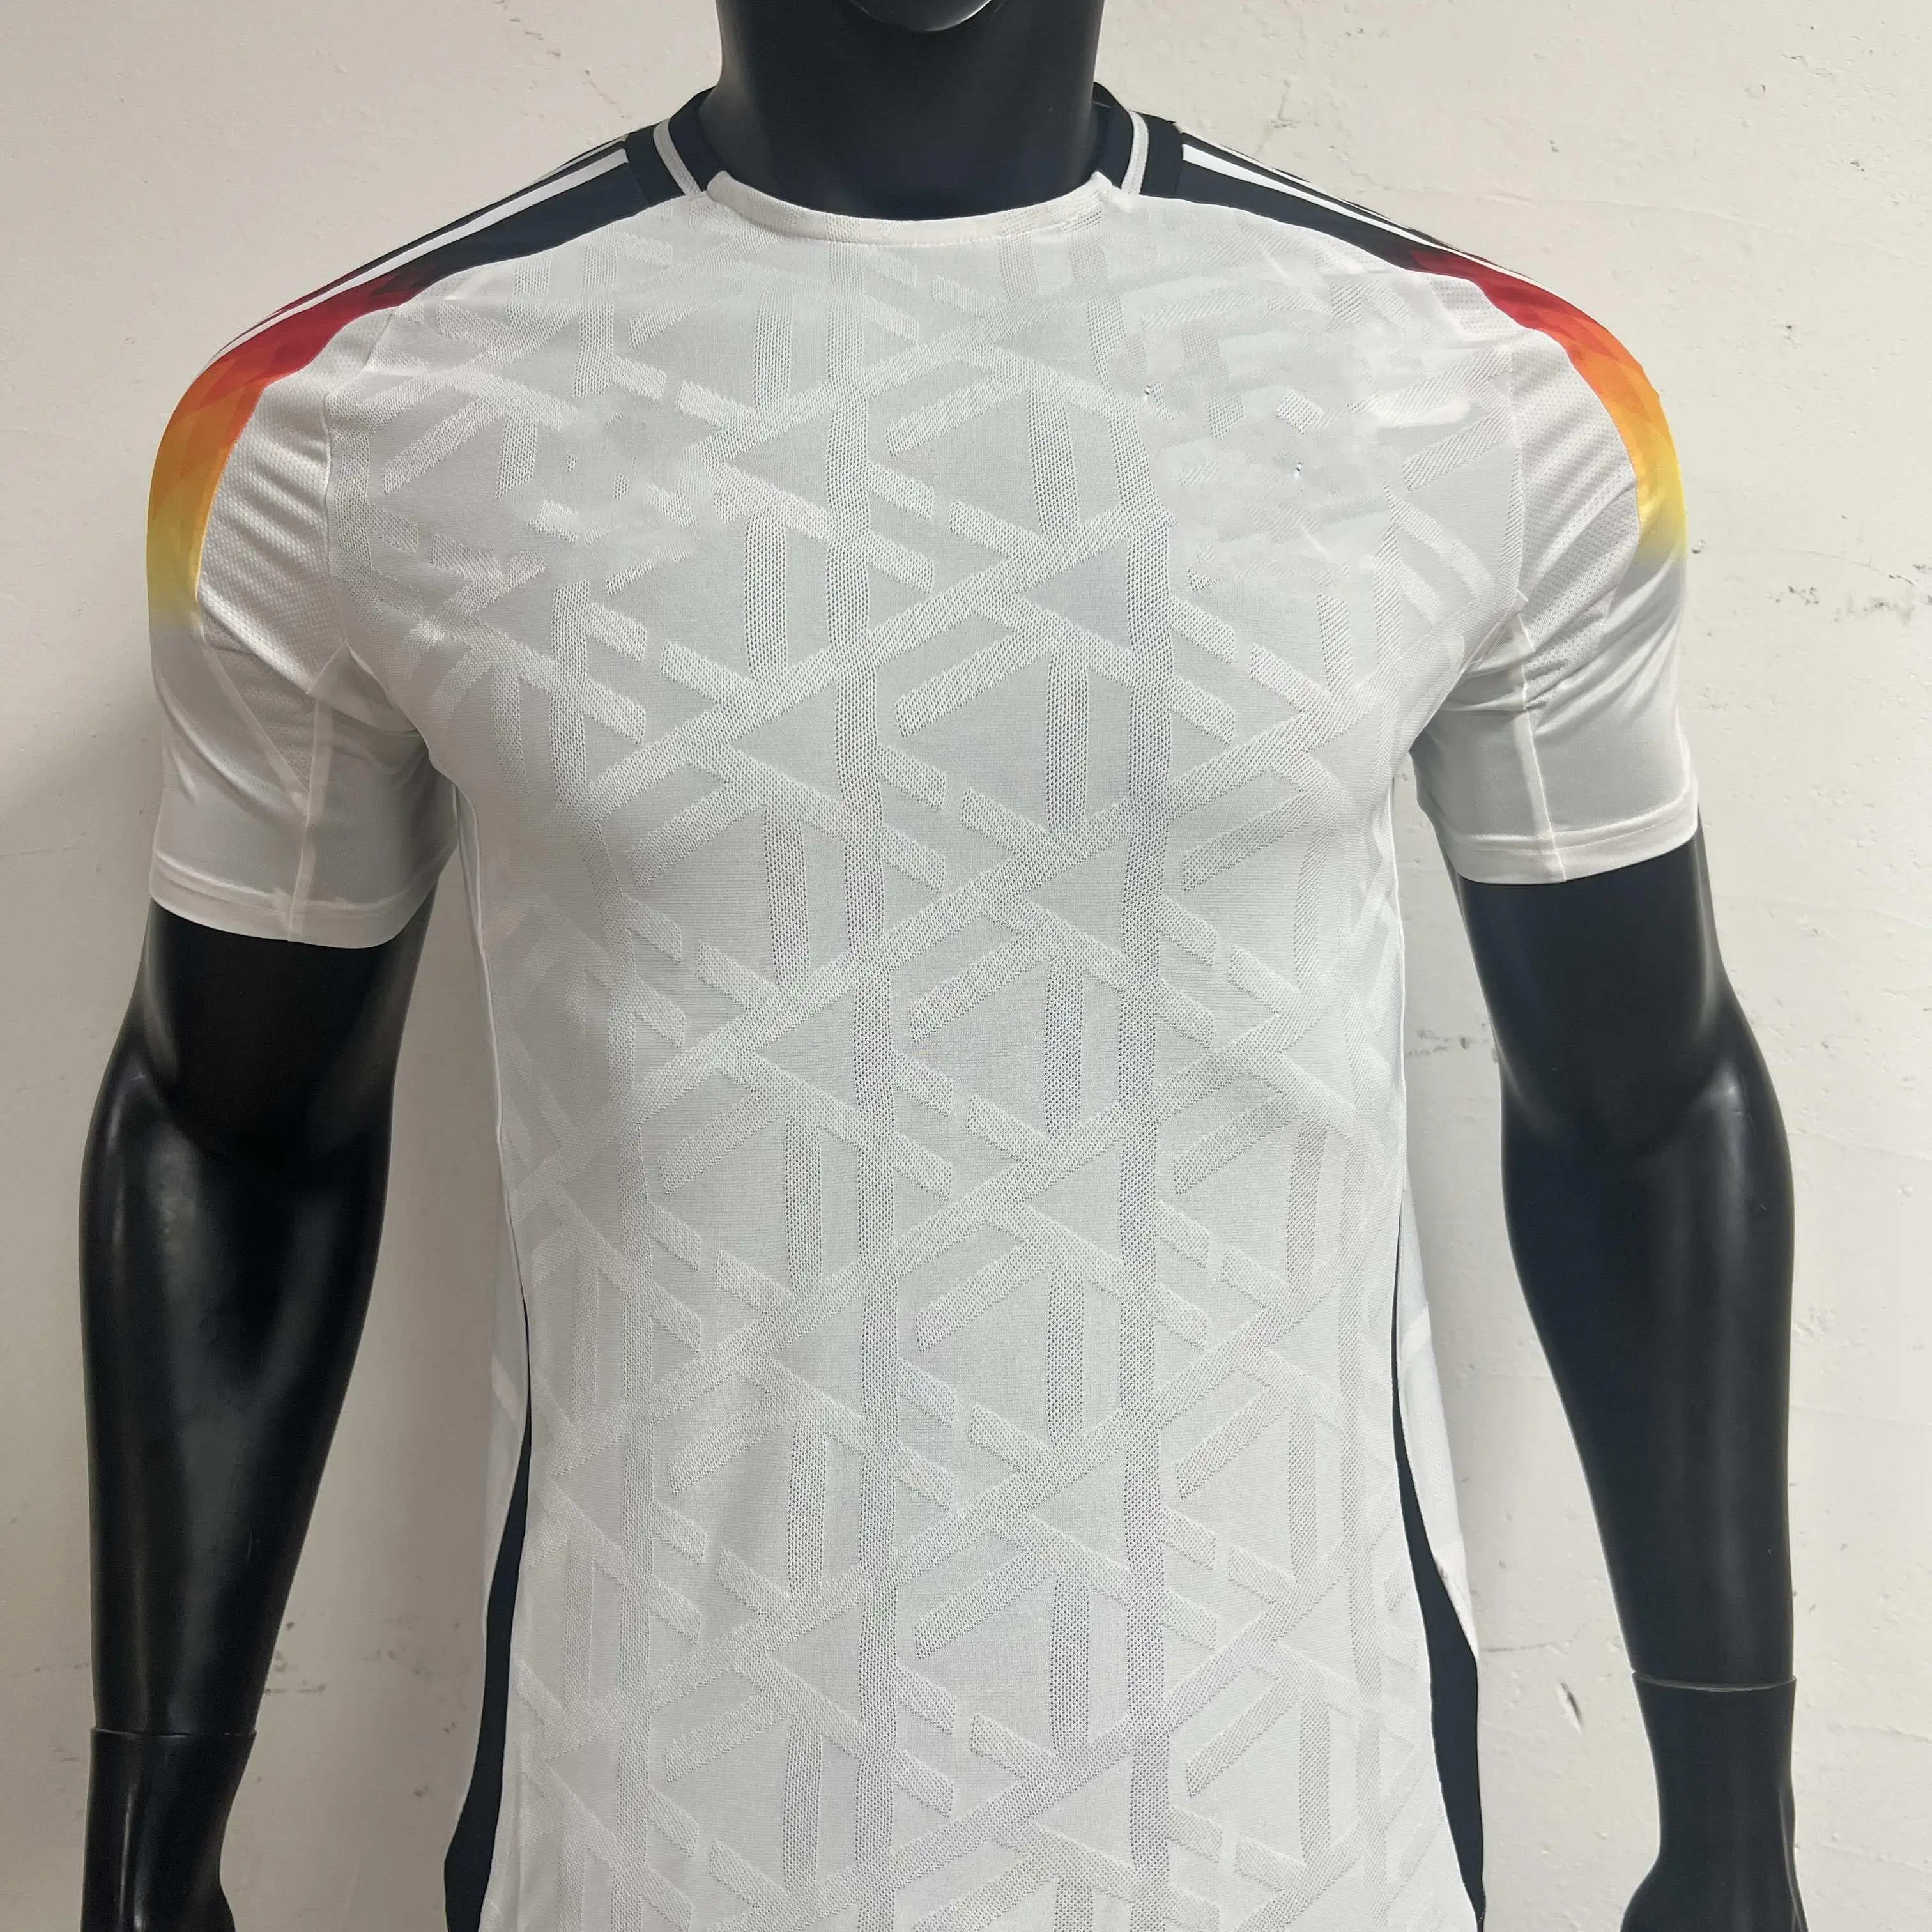 प्रशंसक खिलाड़ी संस्करण 2022 जर्मनी ग्नाब्री मुलर सॉकर जर्सी राष्ट्रीय टीम विश्व फुटबॉल शर्ट पुरुष किड्स किट